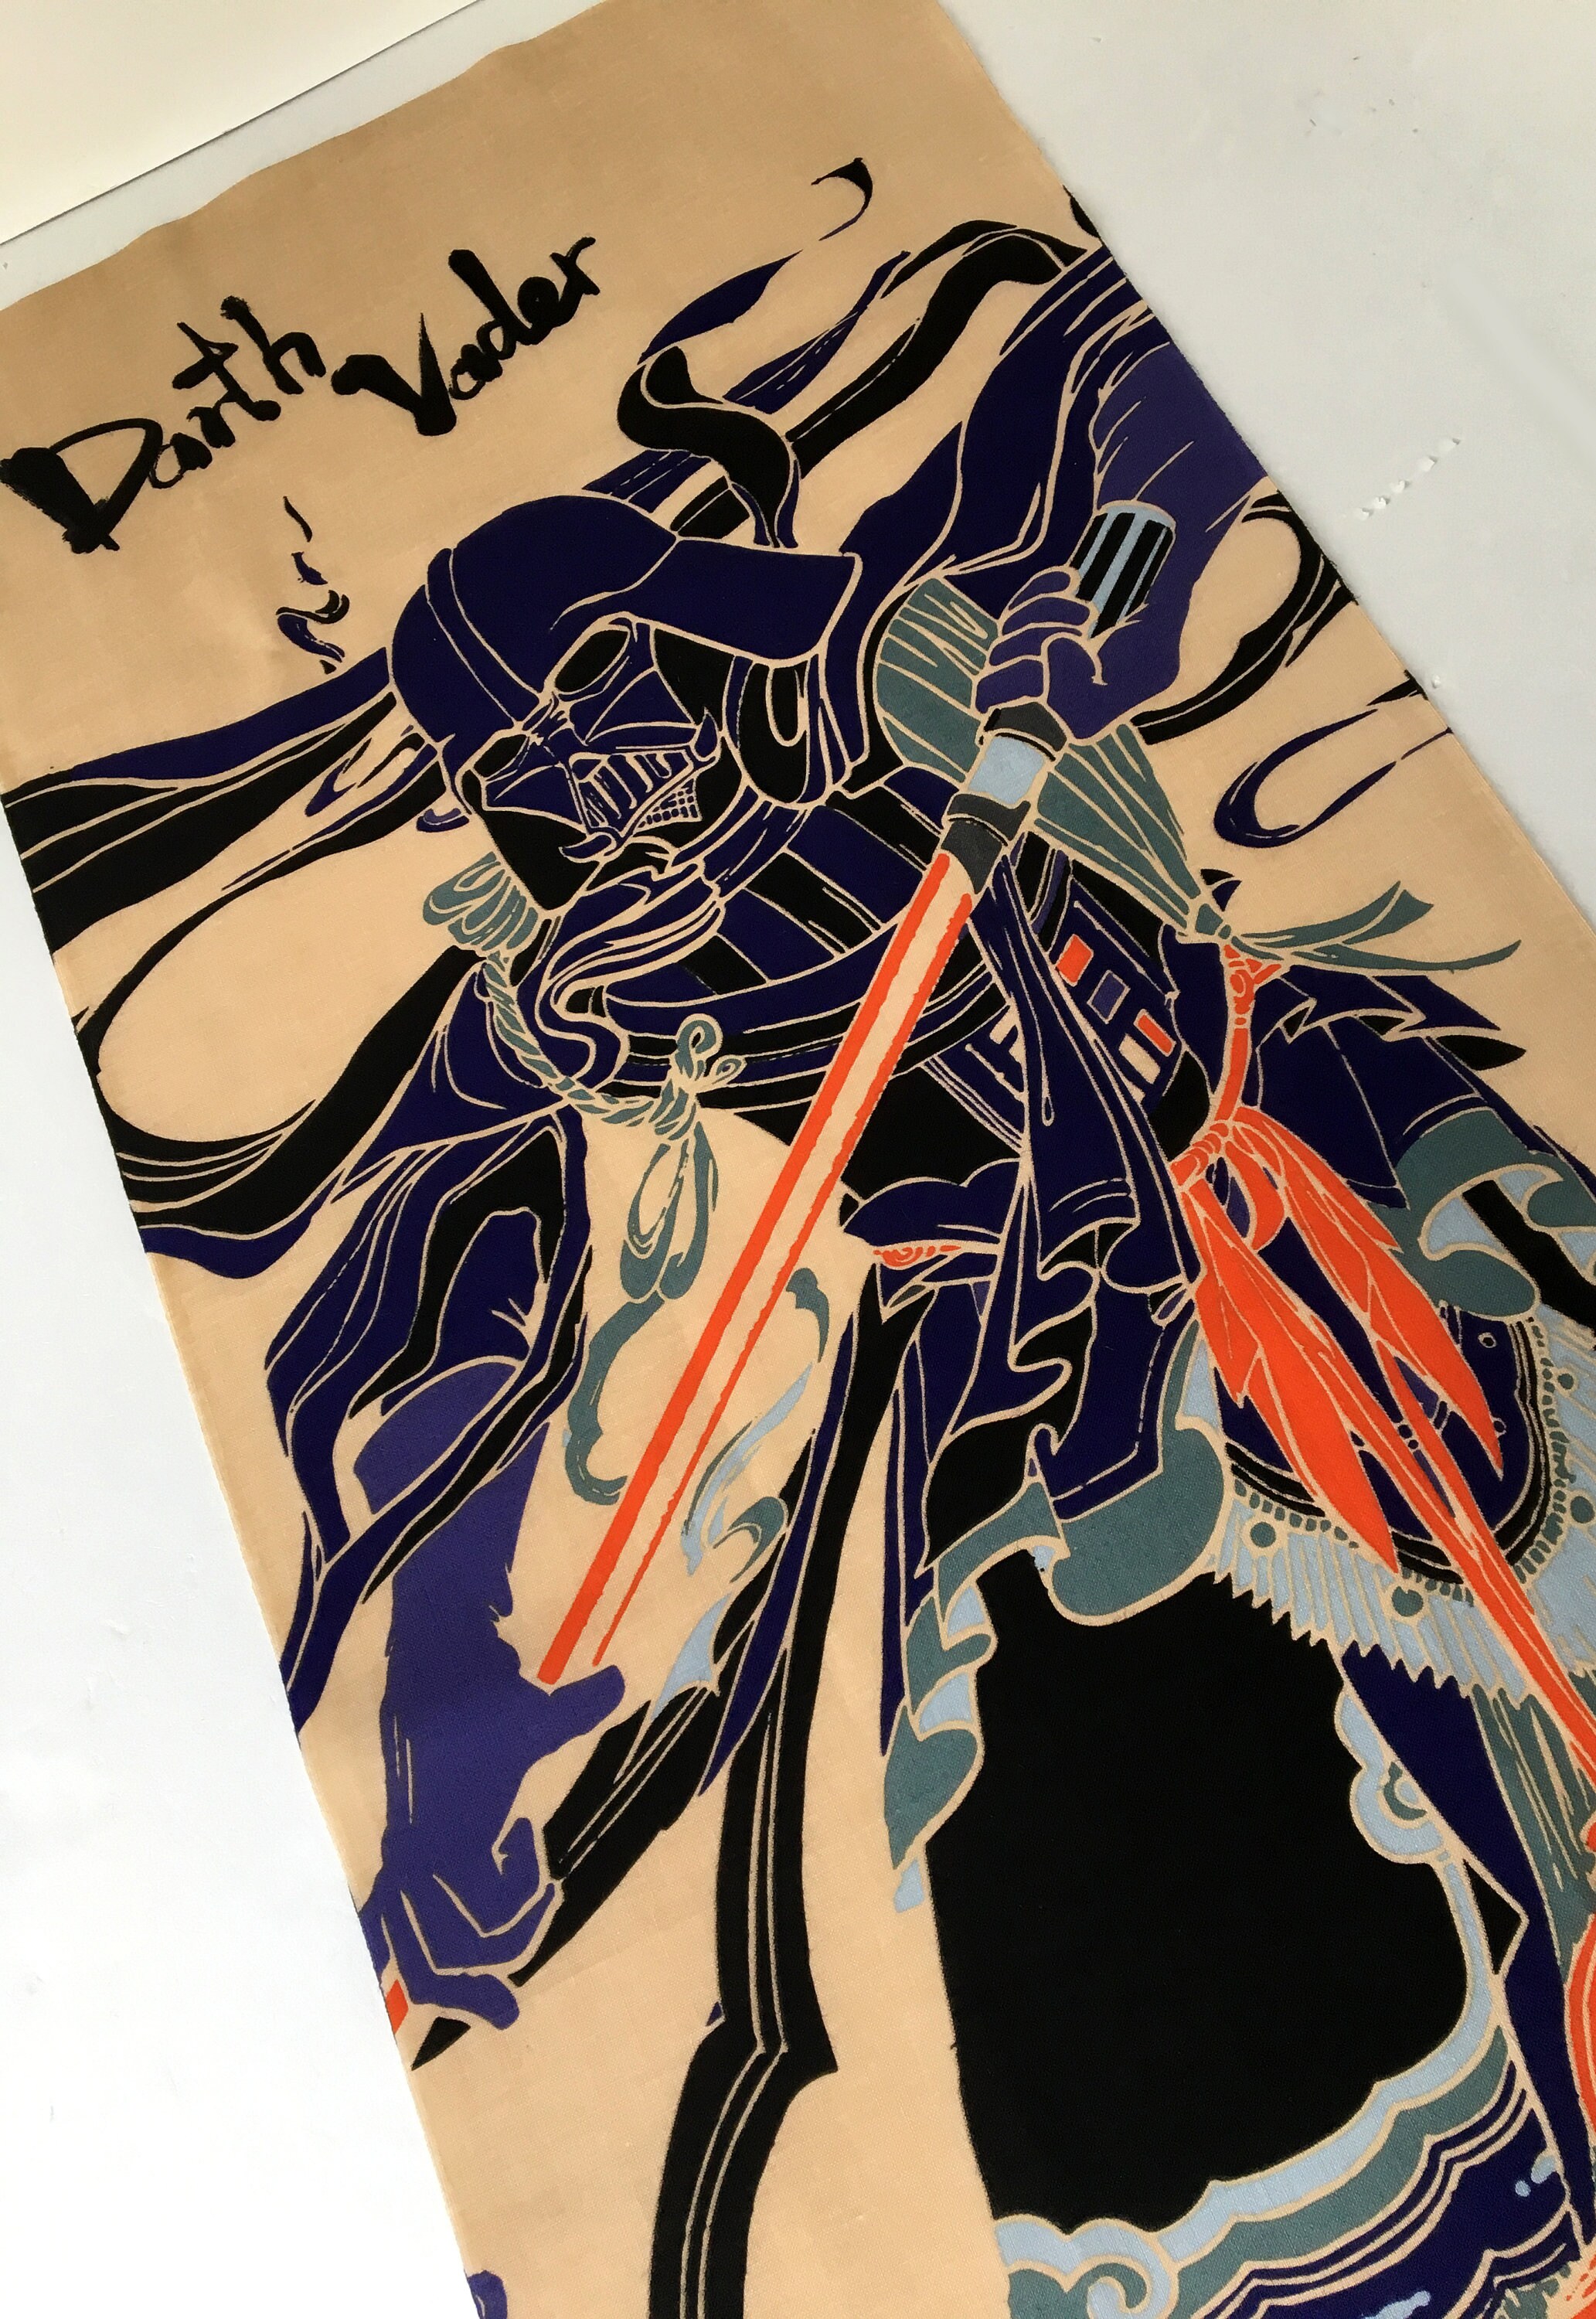 700 STAR WARS JAPANESE TOWEL TENUGUI DARTH VADER SAMURAI MT FUJI 34 X 91cm 